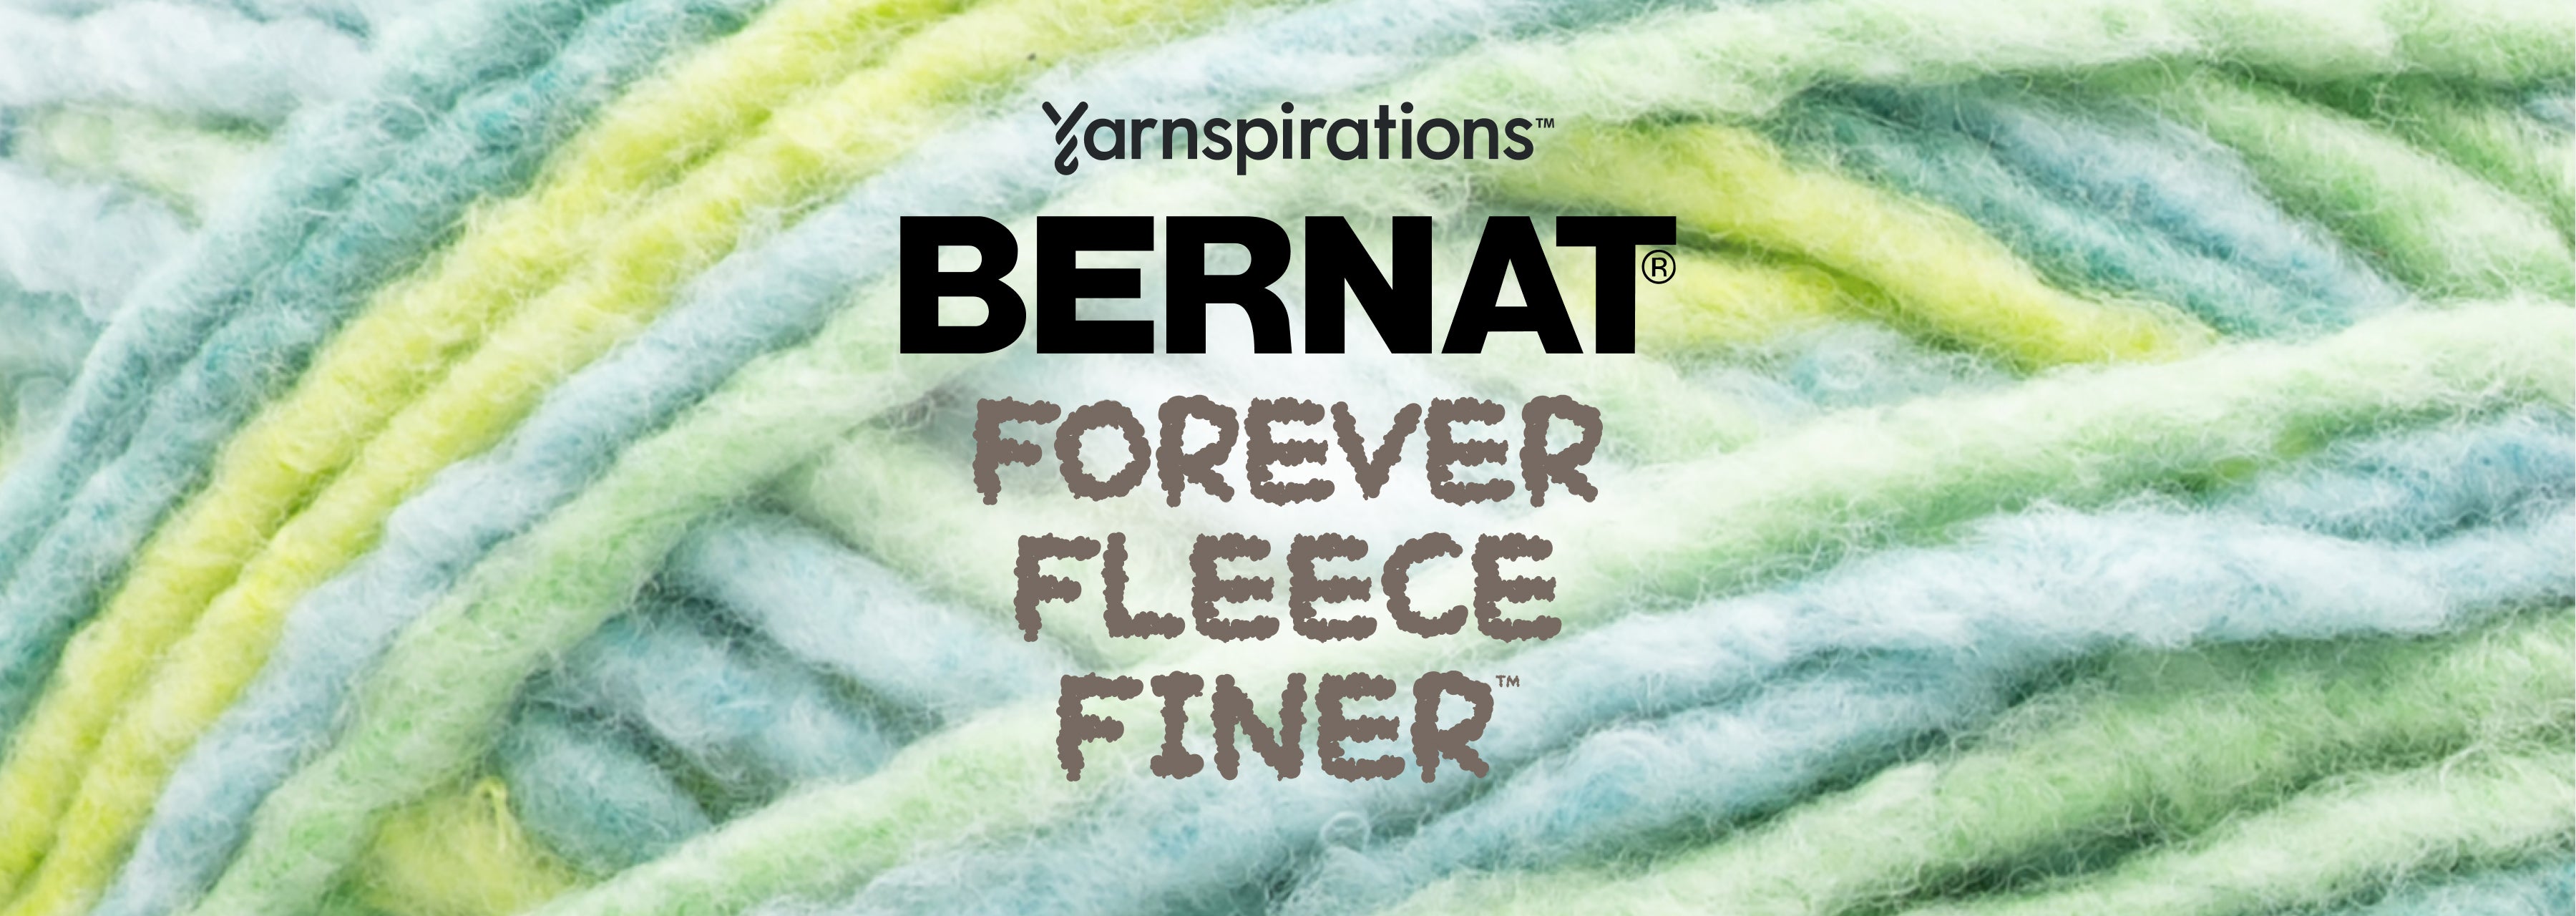 Ravelry: Bernat Forever Fleece Finer